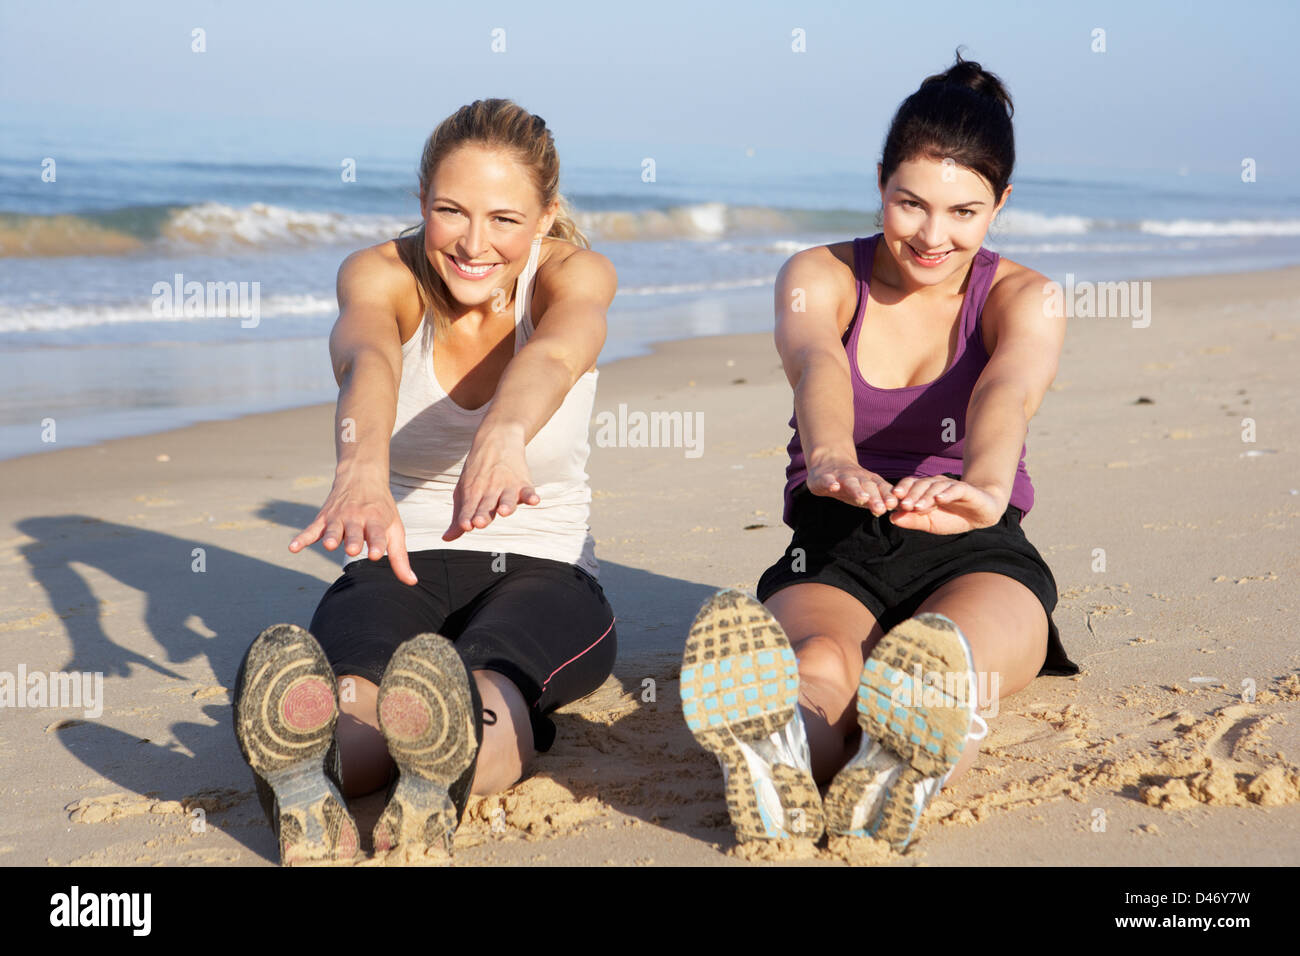 Two Women Exercising On Beach Stock Photo